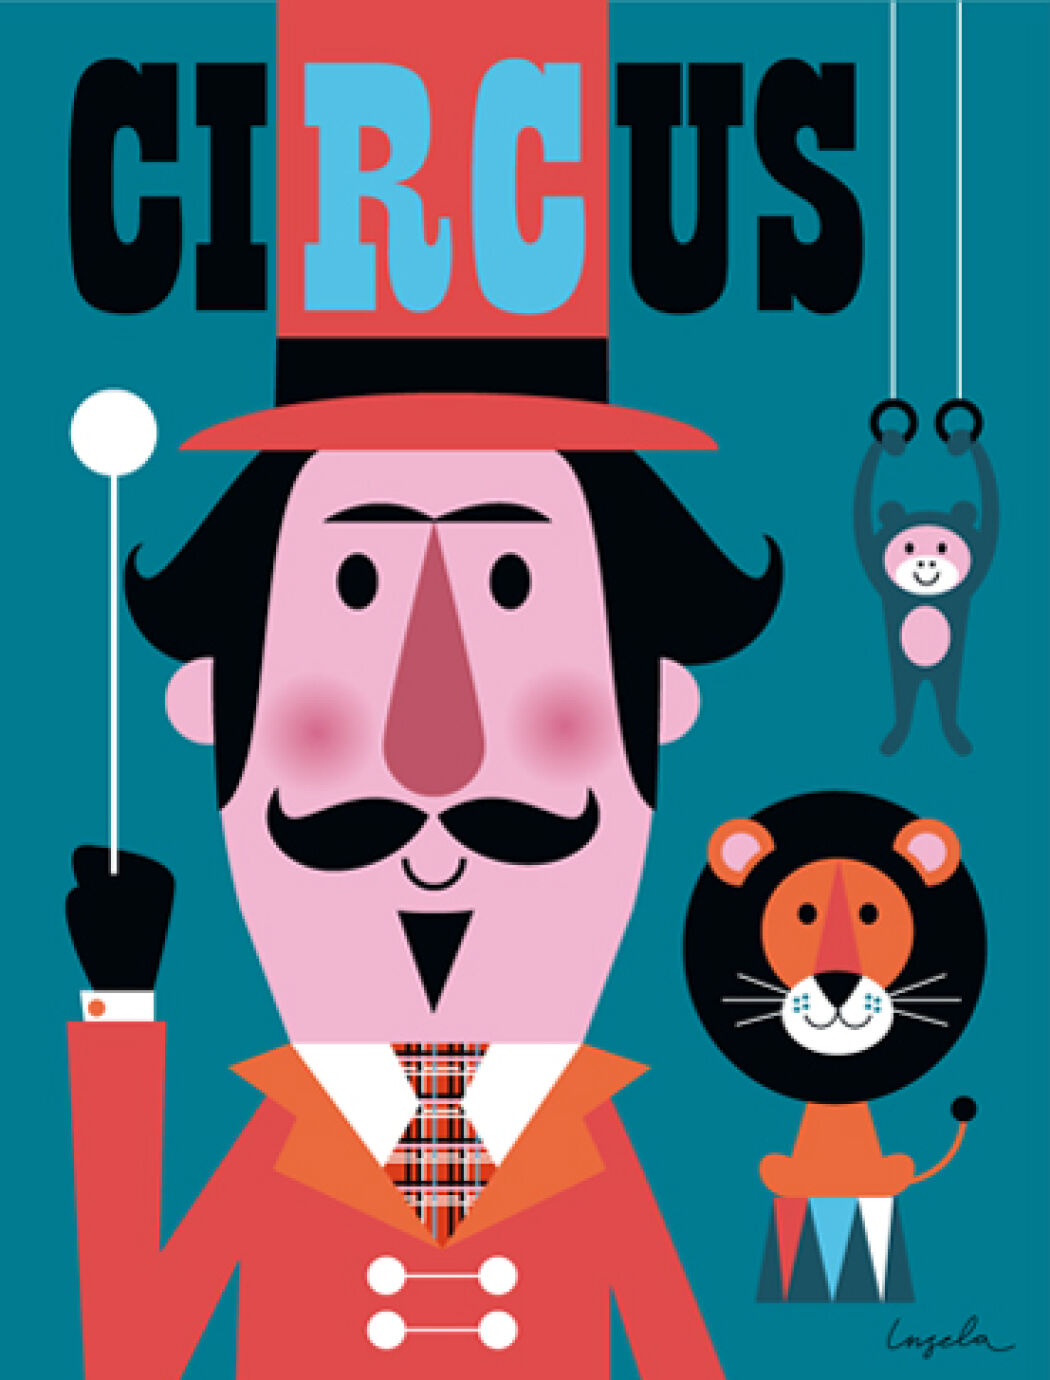 Circus poster by Ingela P Arrhenius